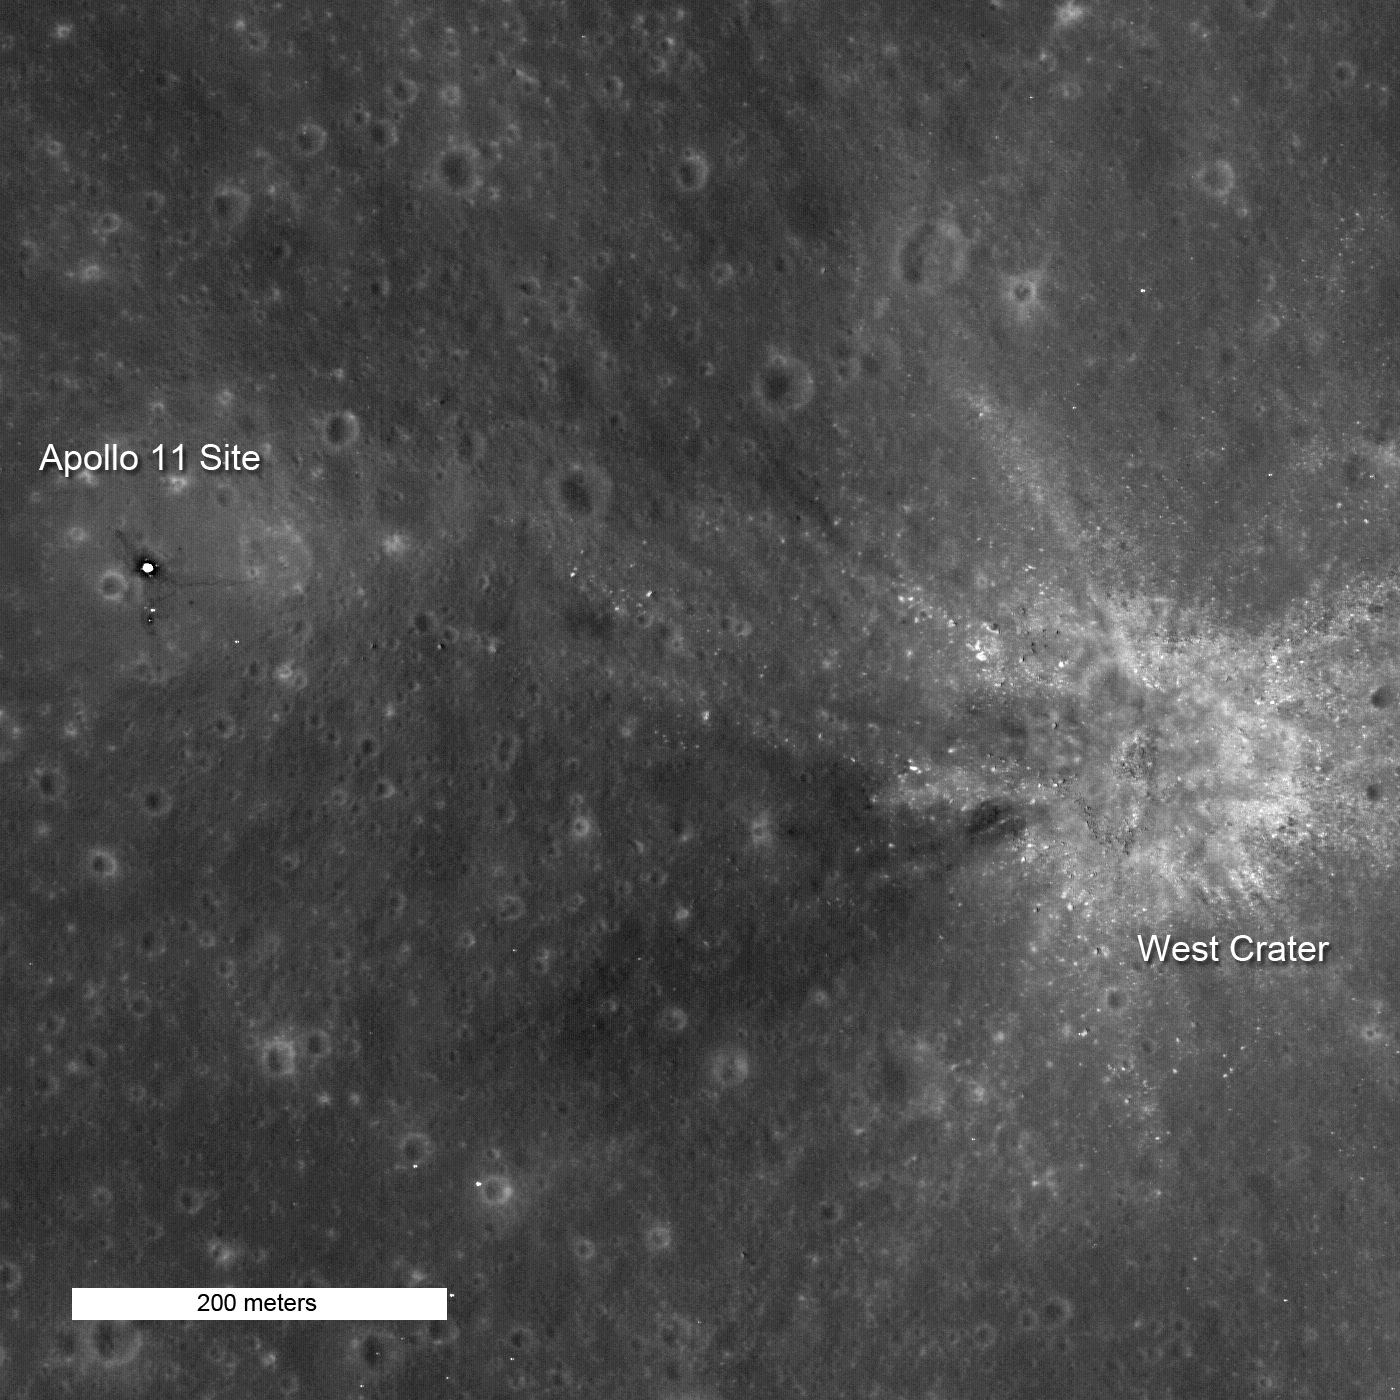 Lunar Reconnaissance Orbiter de la NASA a photographié le module lunaire Apollo 11 et le reste du site d'atterrissage de la mission en 2009.